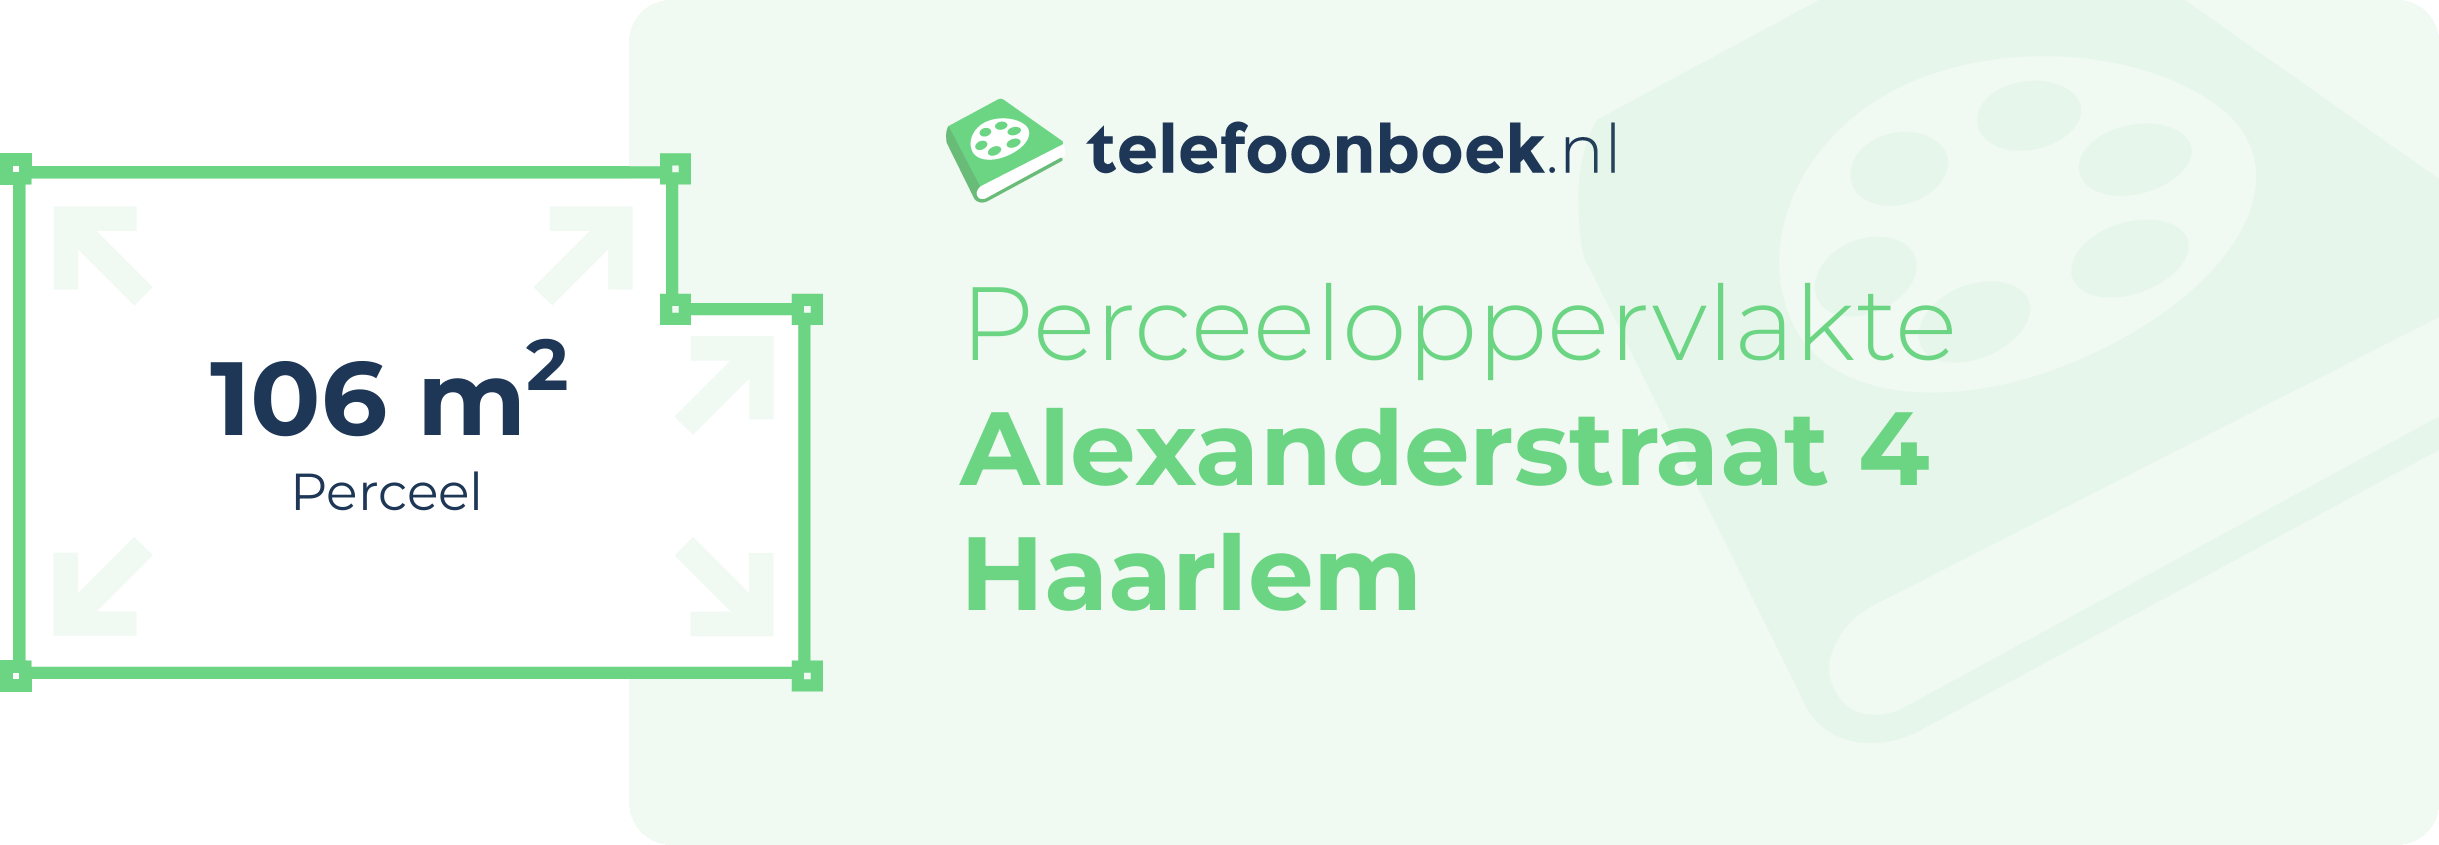 Perceeloppervlakte Alexanderstraat 4 Haarlem